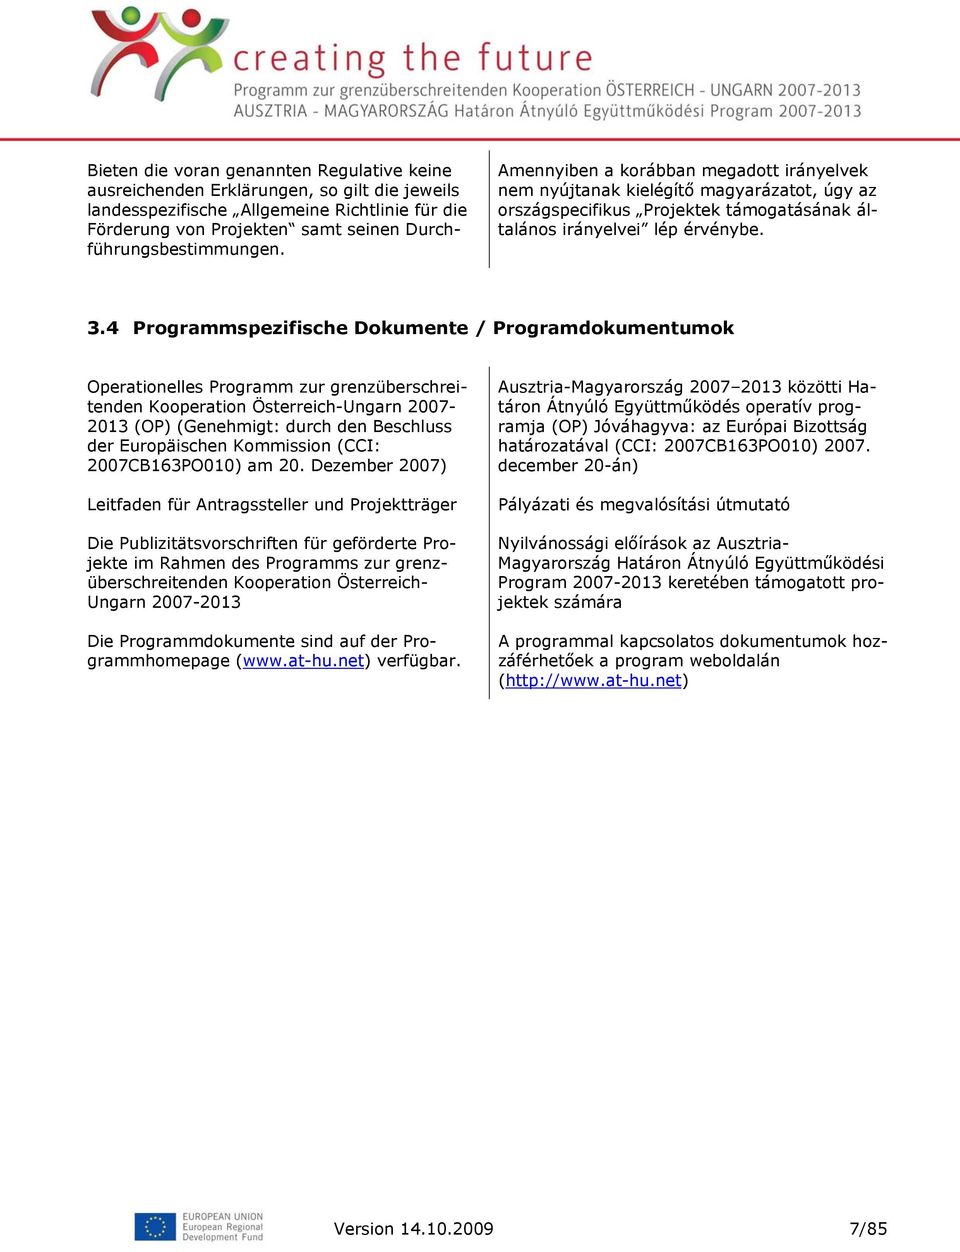 4 Programmspezifische Dokumente / Programdokumentumok Operationelles Programm zur grenzüberschreitenden Kooperation Österreich-Ungarn 2007-2013 (OP) (Genehmigt: durch den Beschluss der Europäischen